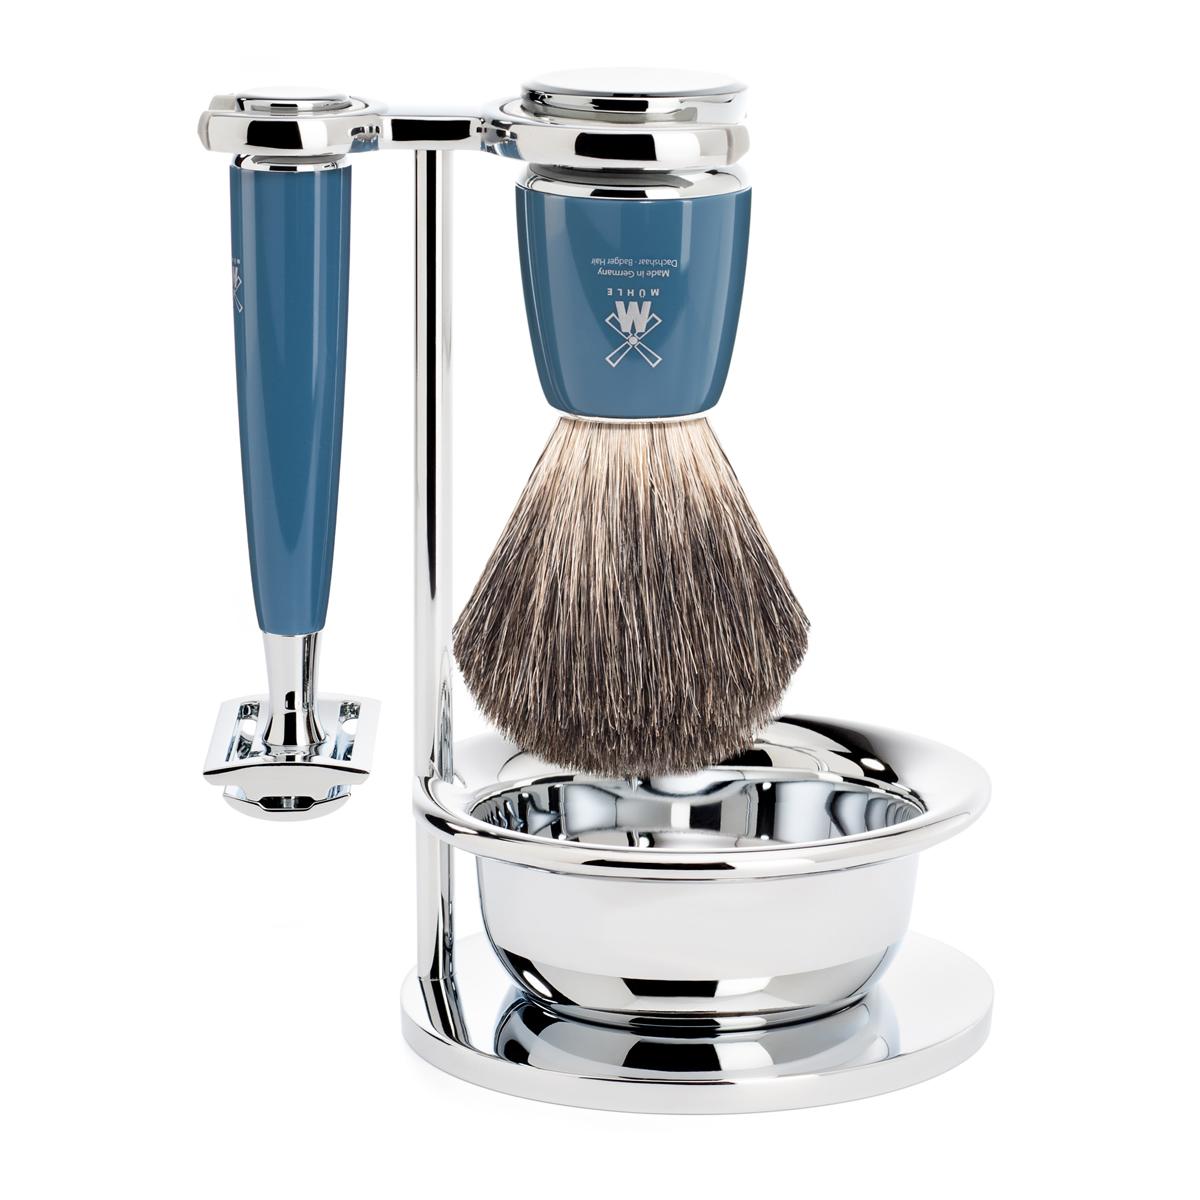 Mühle rytmo azul gasolina 4 unid. conjunto de barbear de texugo puro / aparelho de barbear